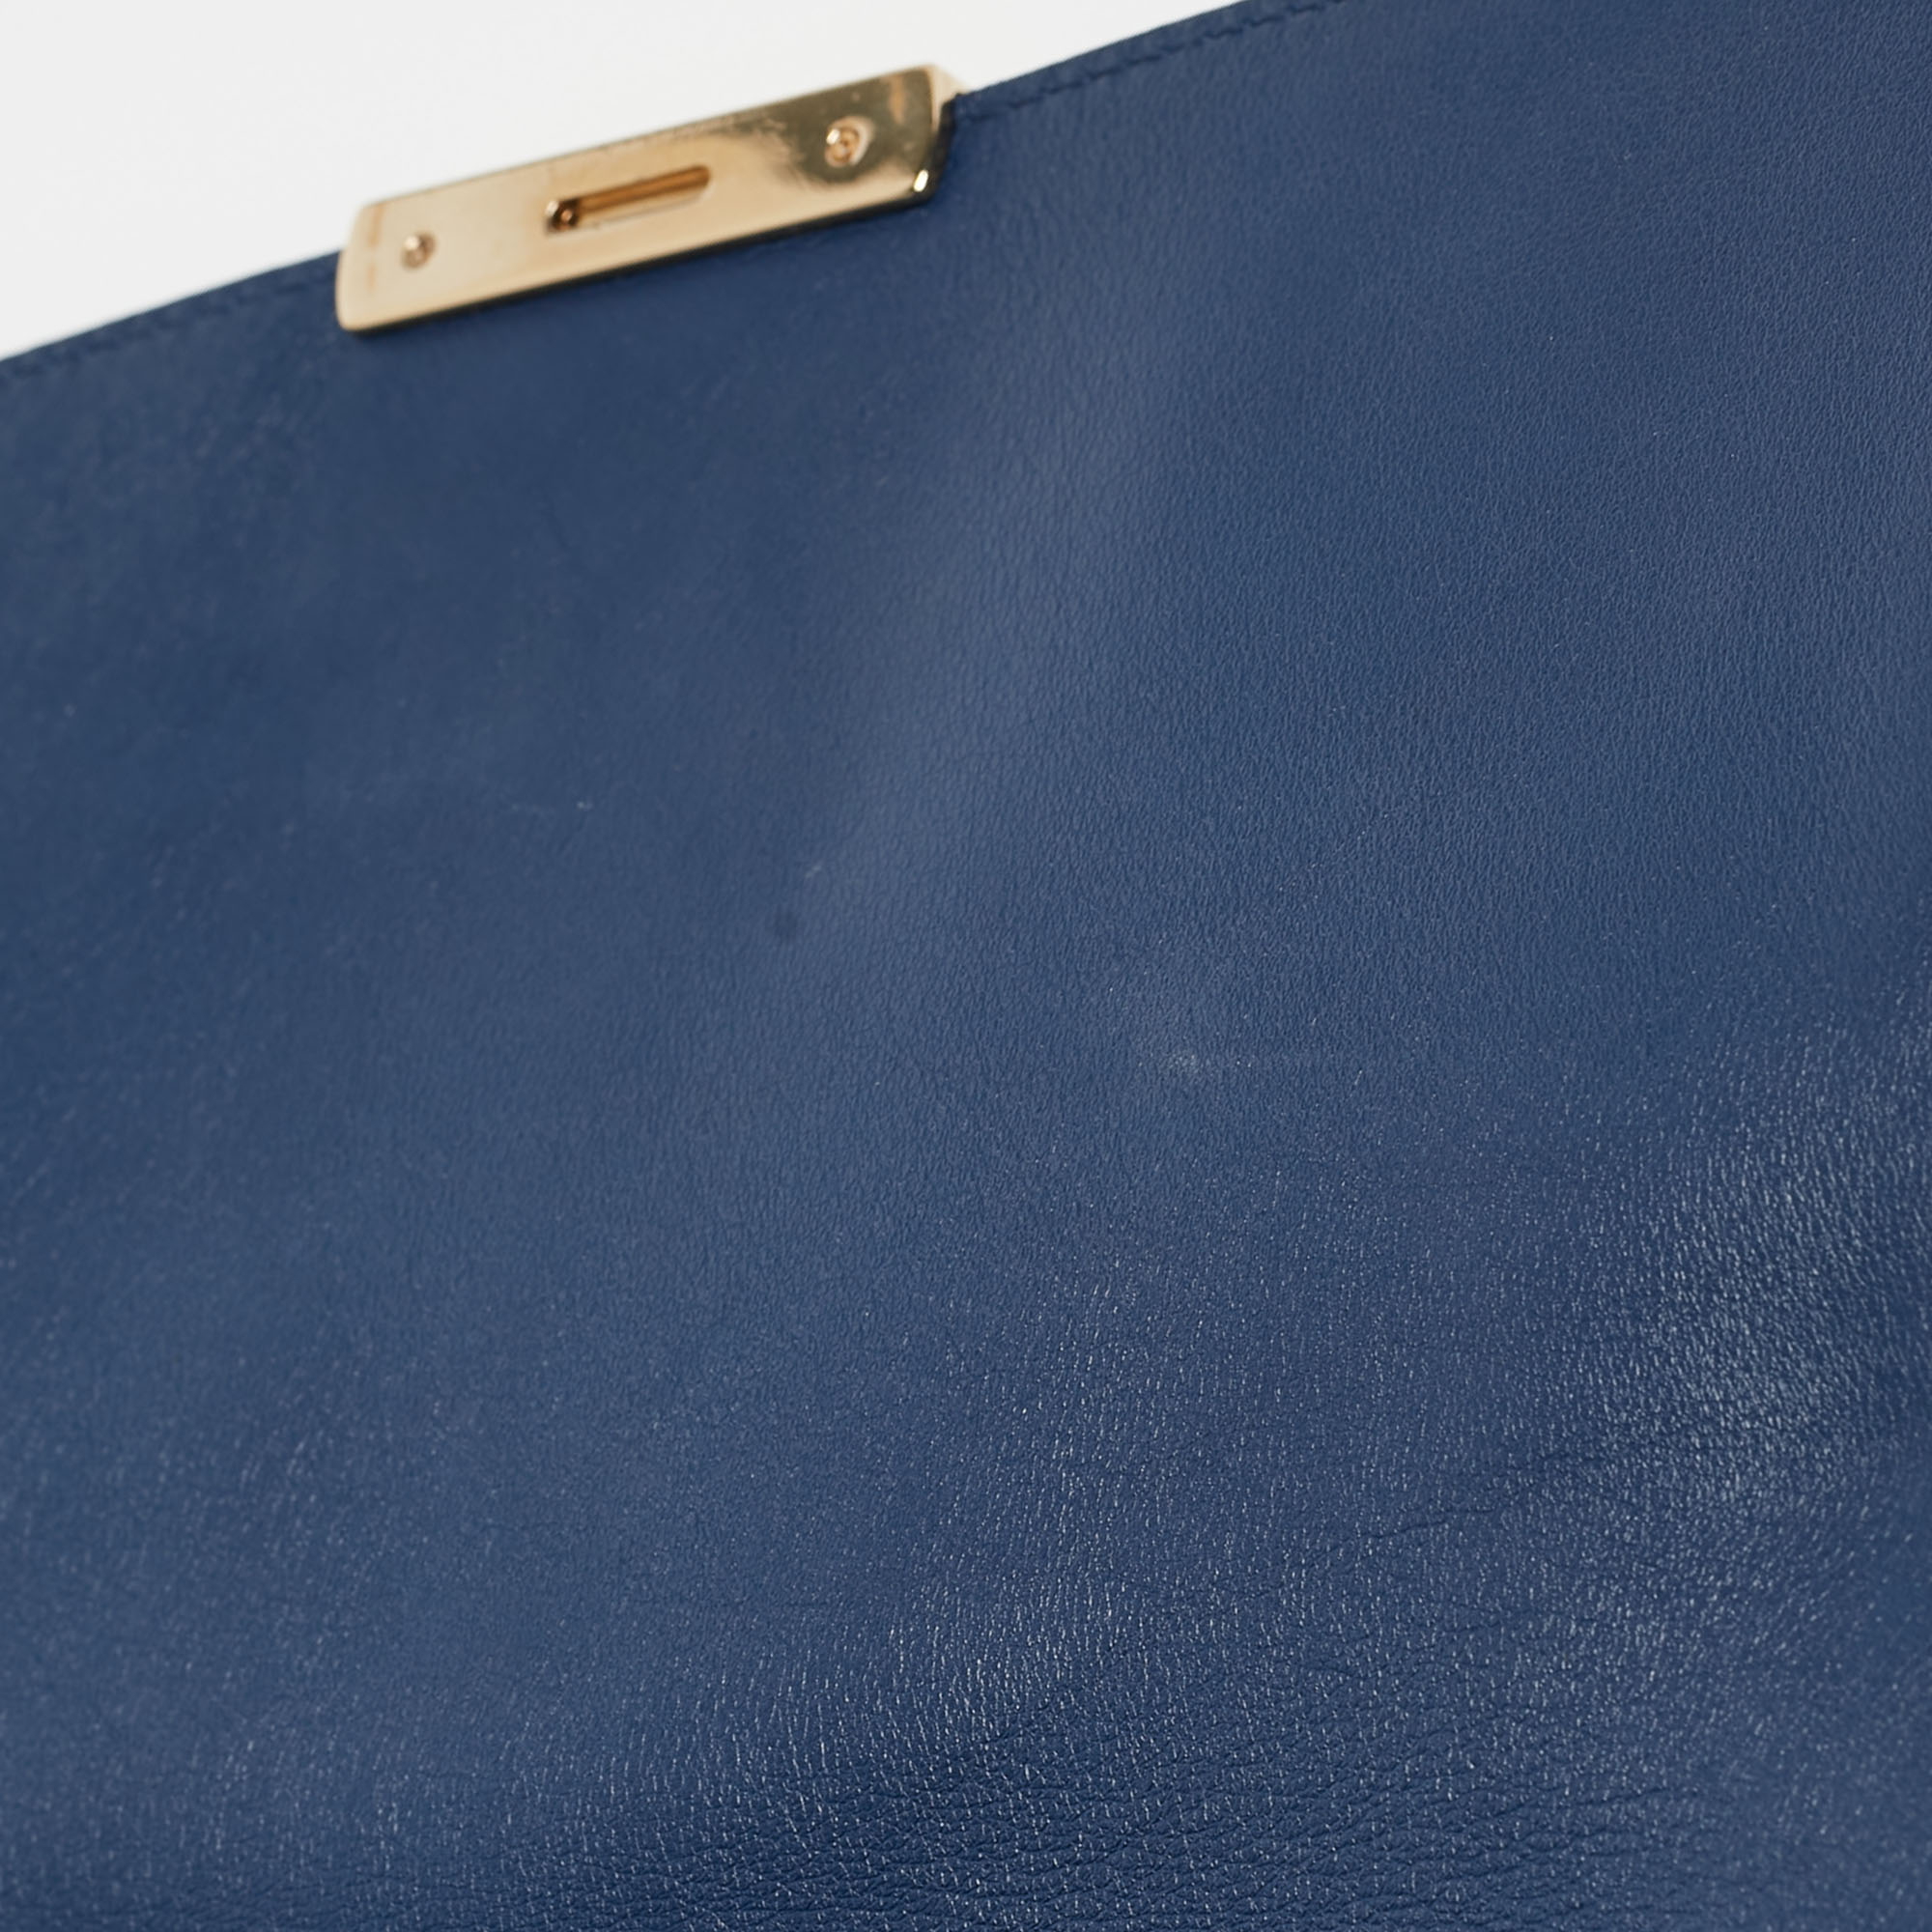 Dior Blue Leather Large Diorling Shoulder Bag